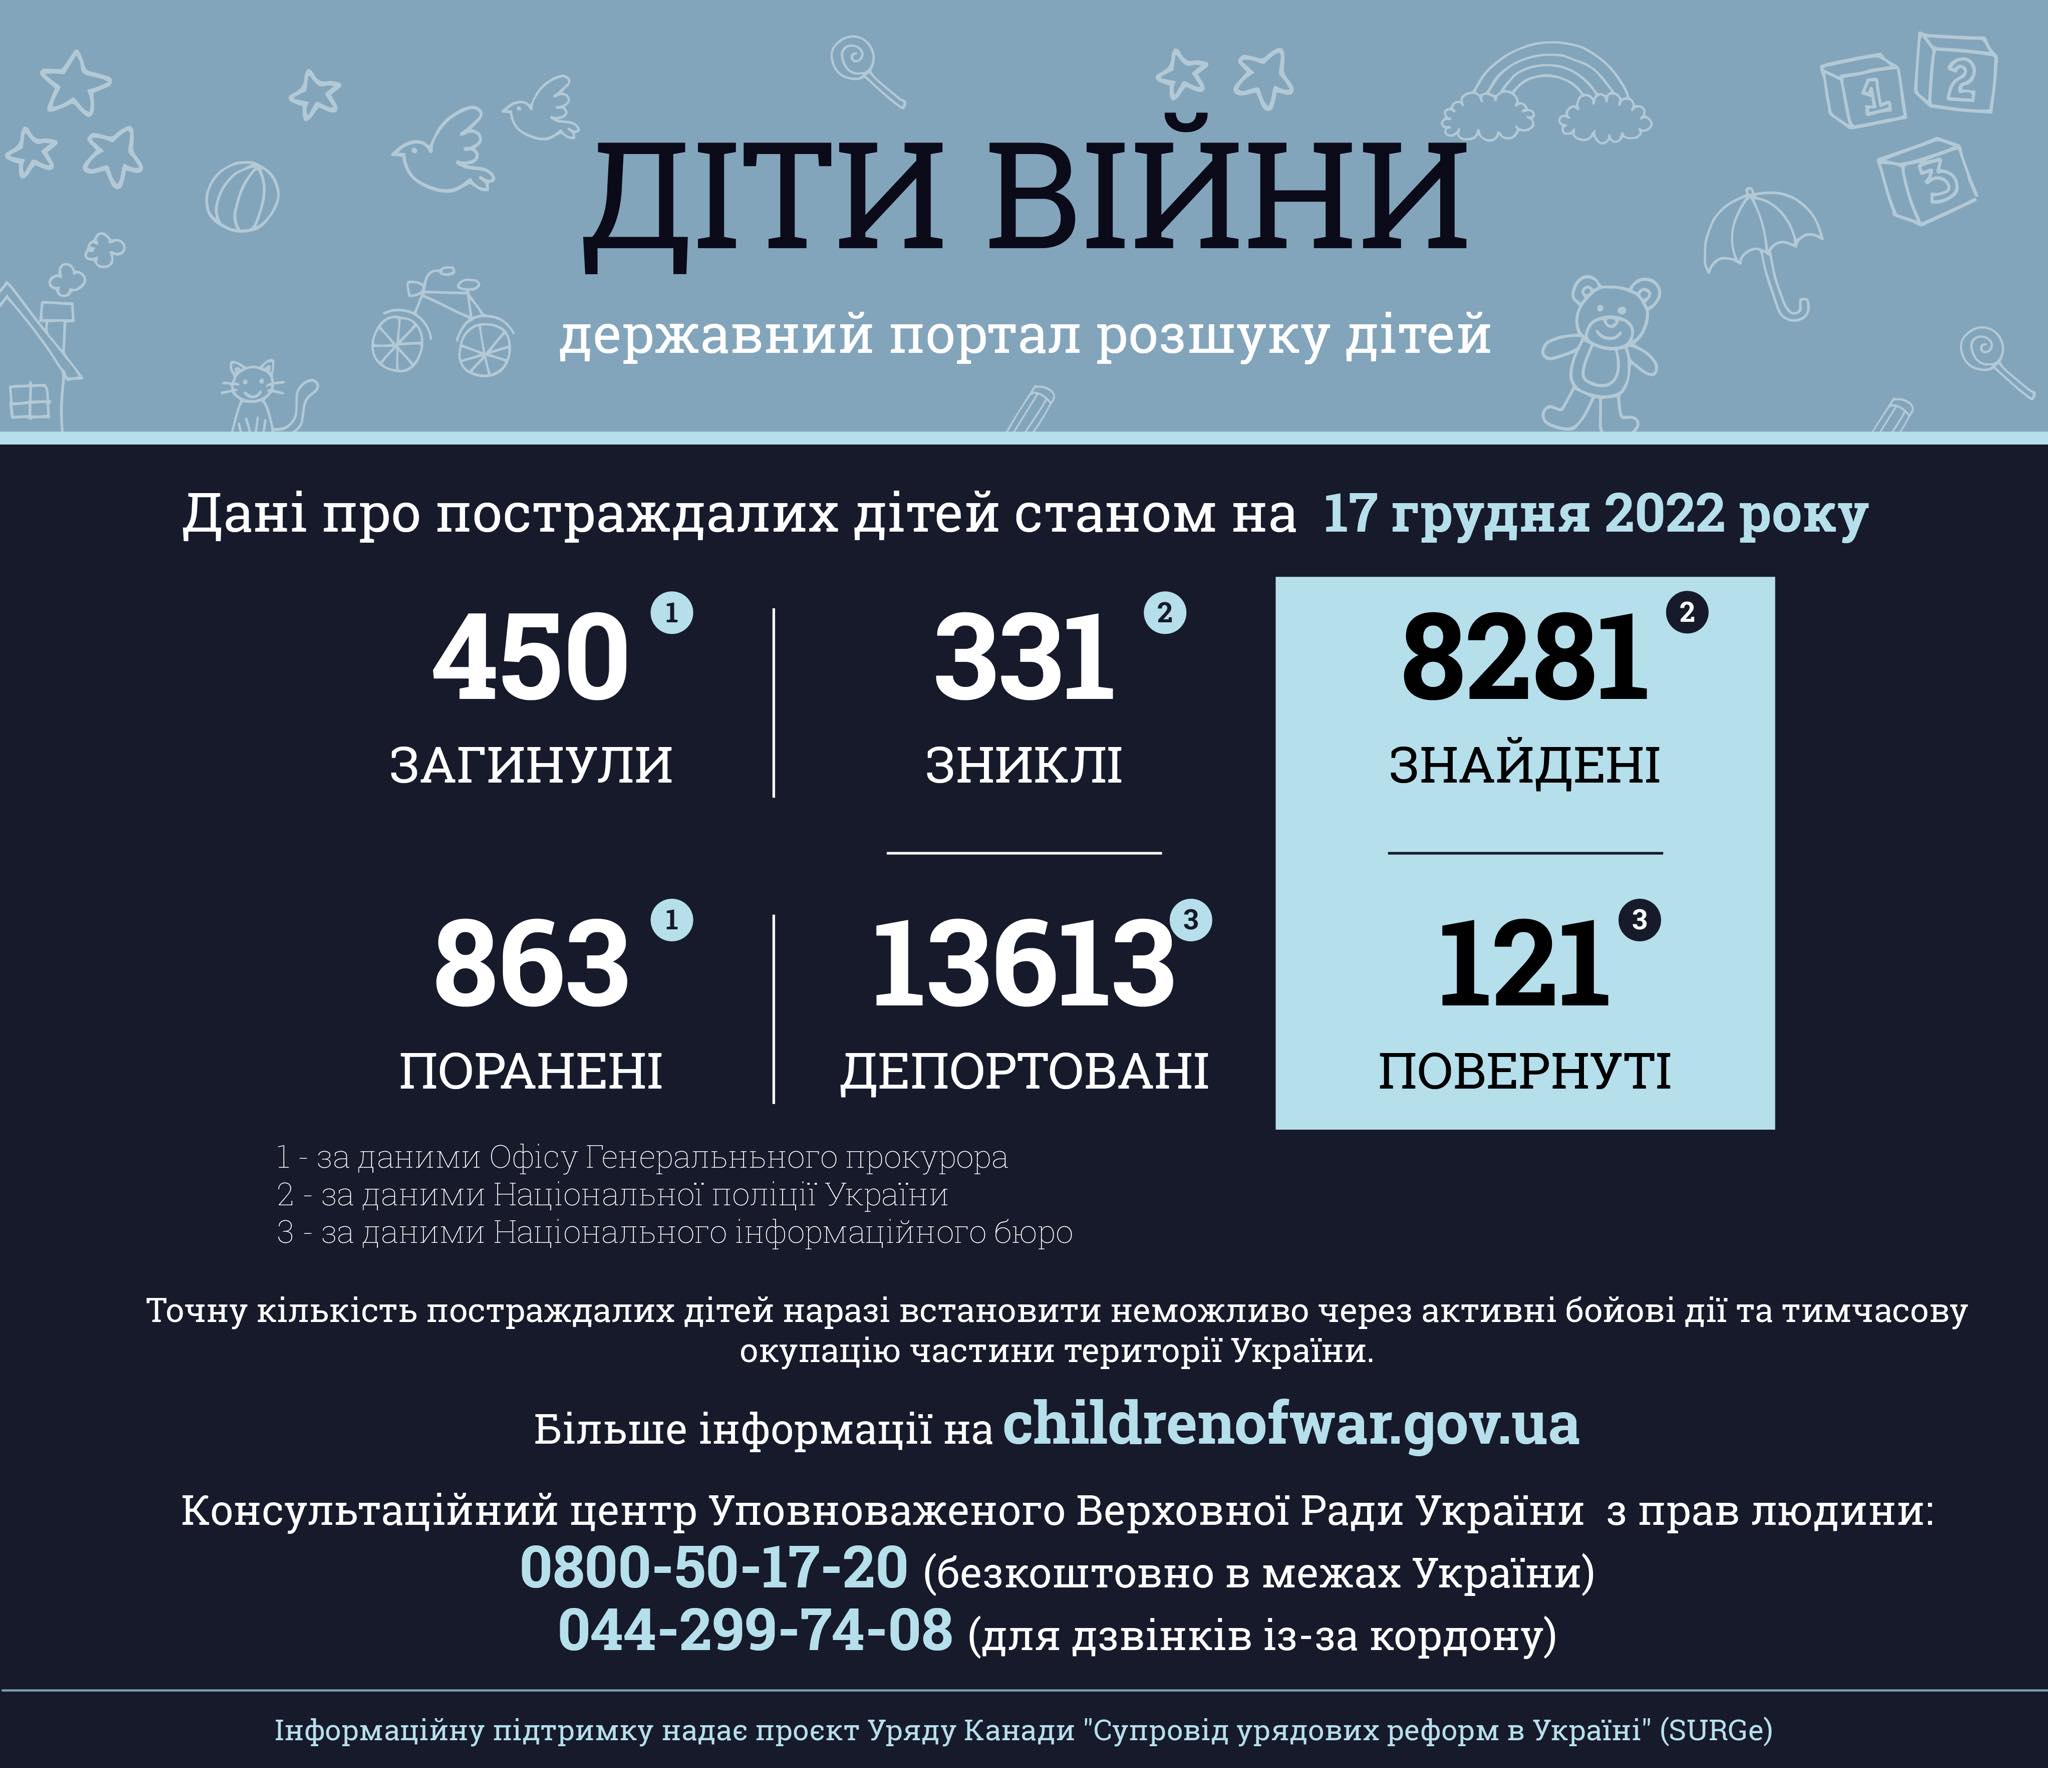 росія вбила 450 і вкрала понад 13 тисяч українських дітей - Офіс генпрокурора